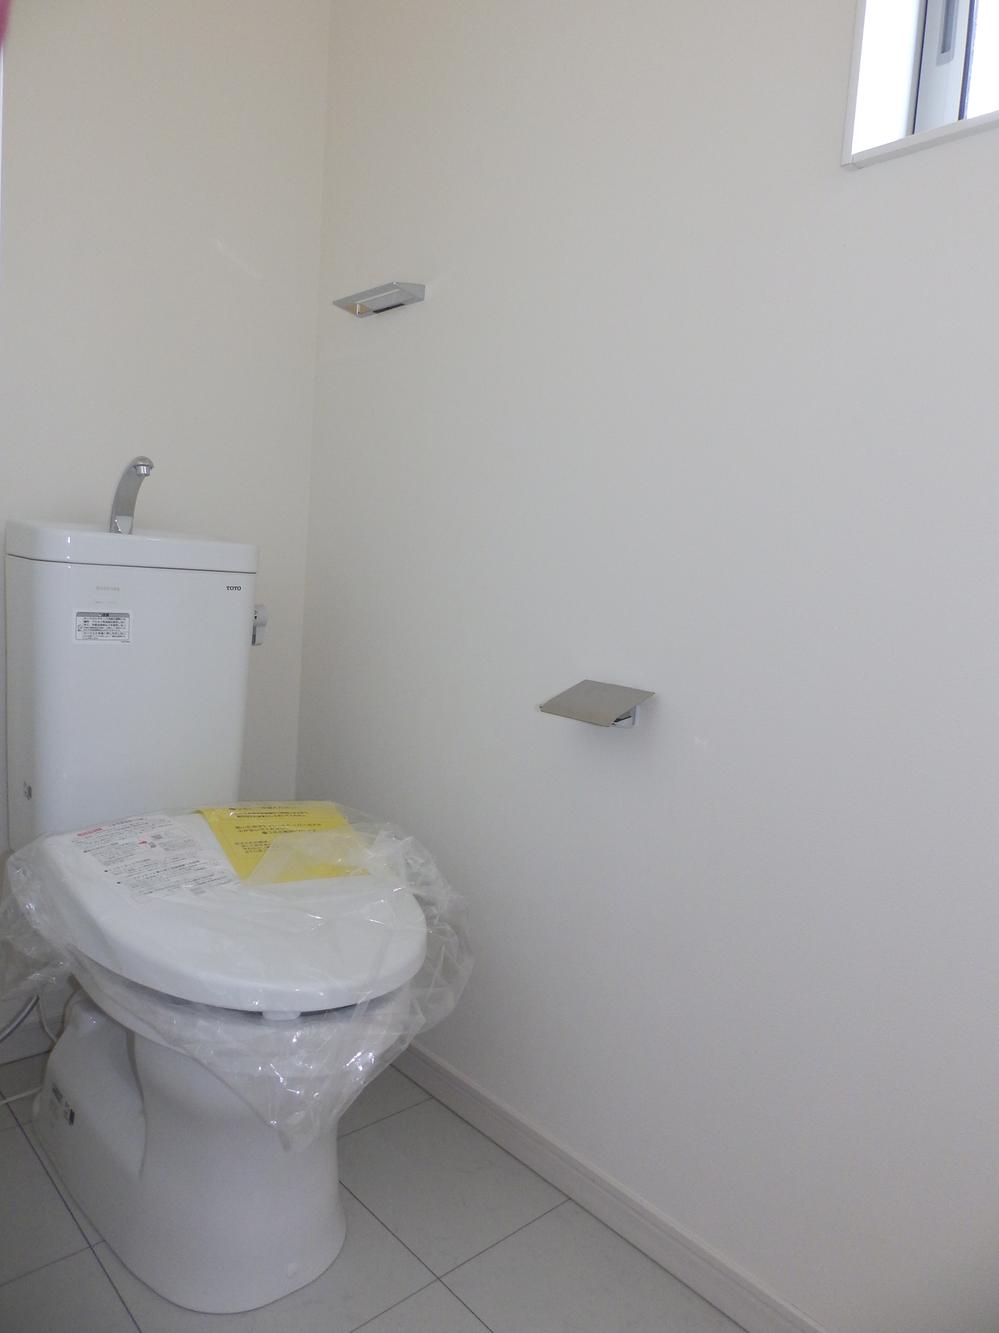 Toilet.  ◆ Second floor toilet ◆ 